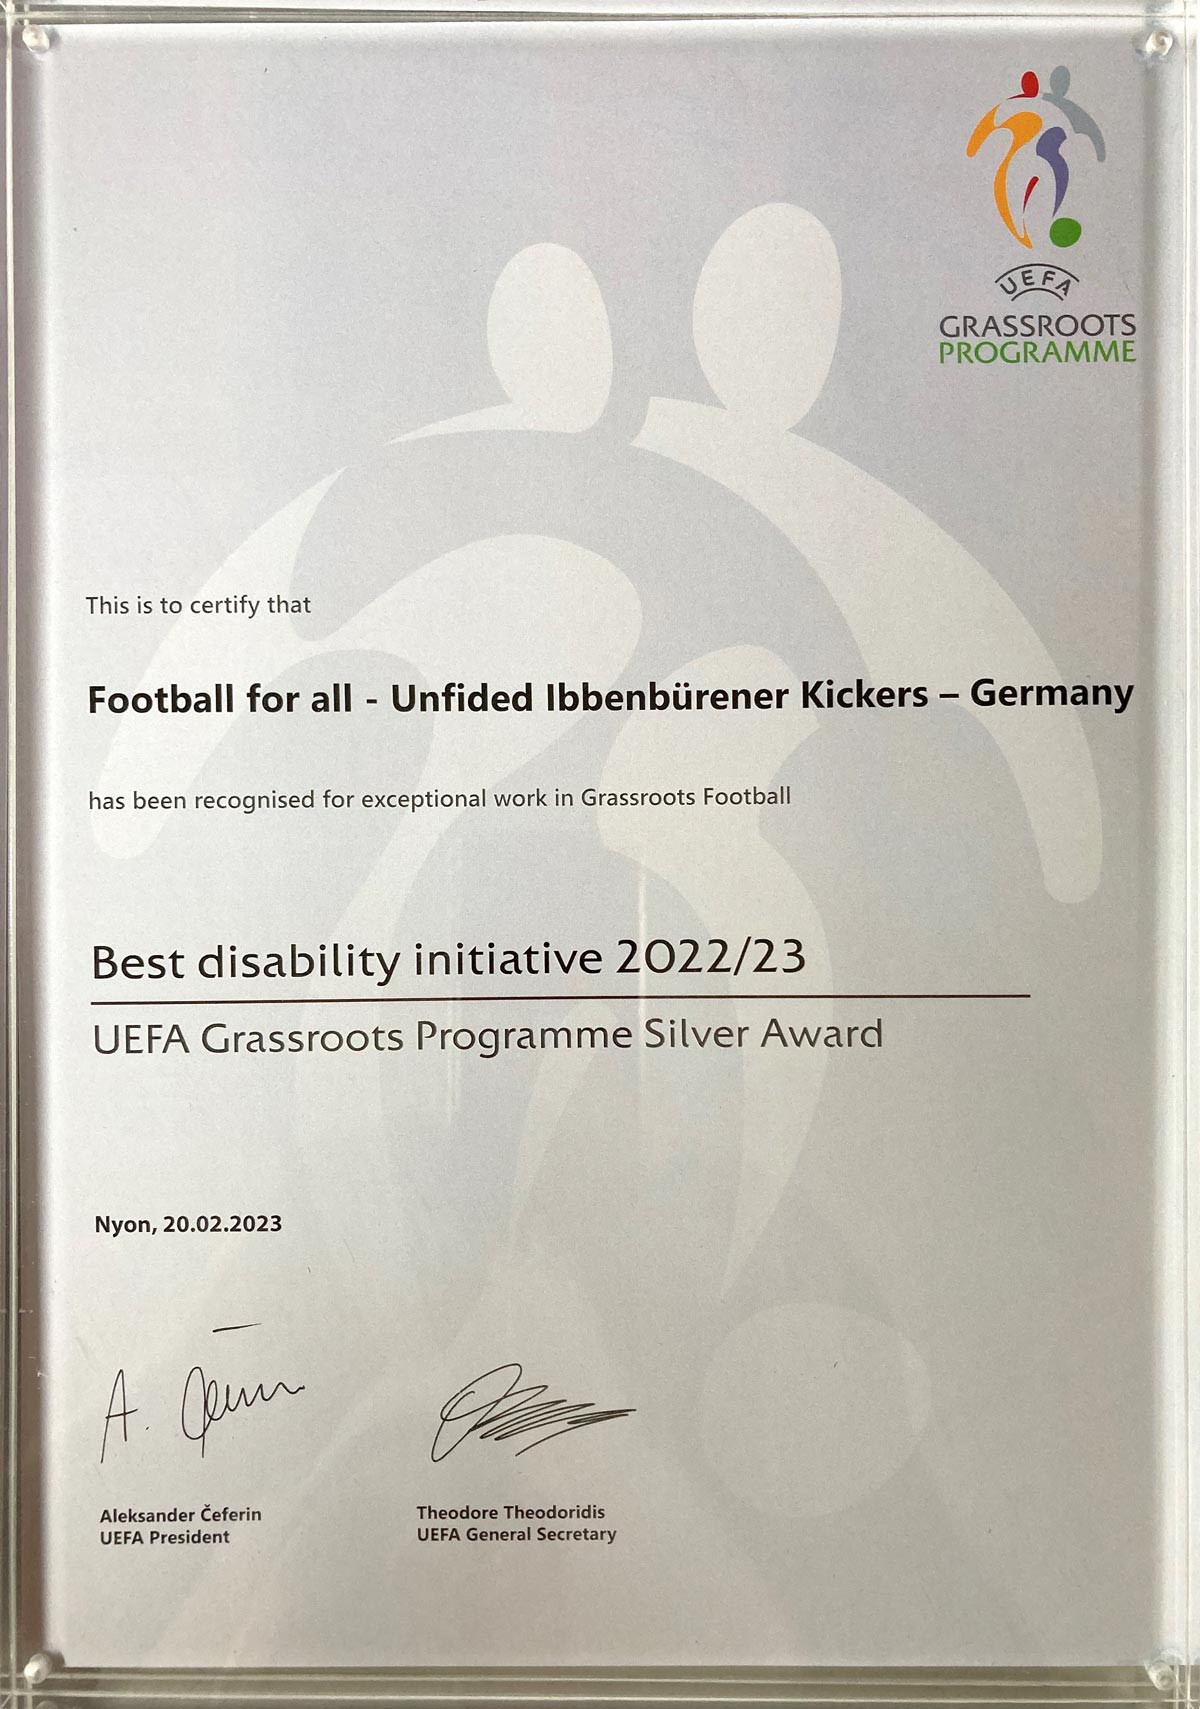 Abbildung zeigt die Urkunde der UEFA Auszeichnung für die Ibbenbürener Kickers